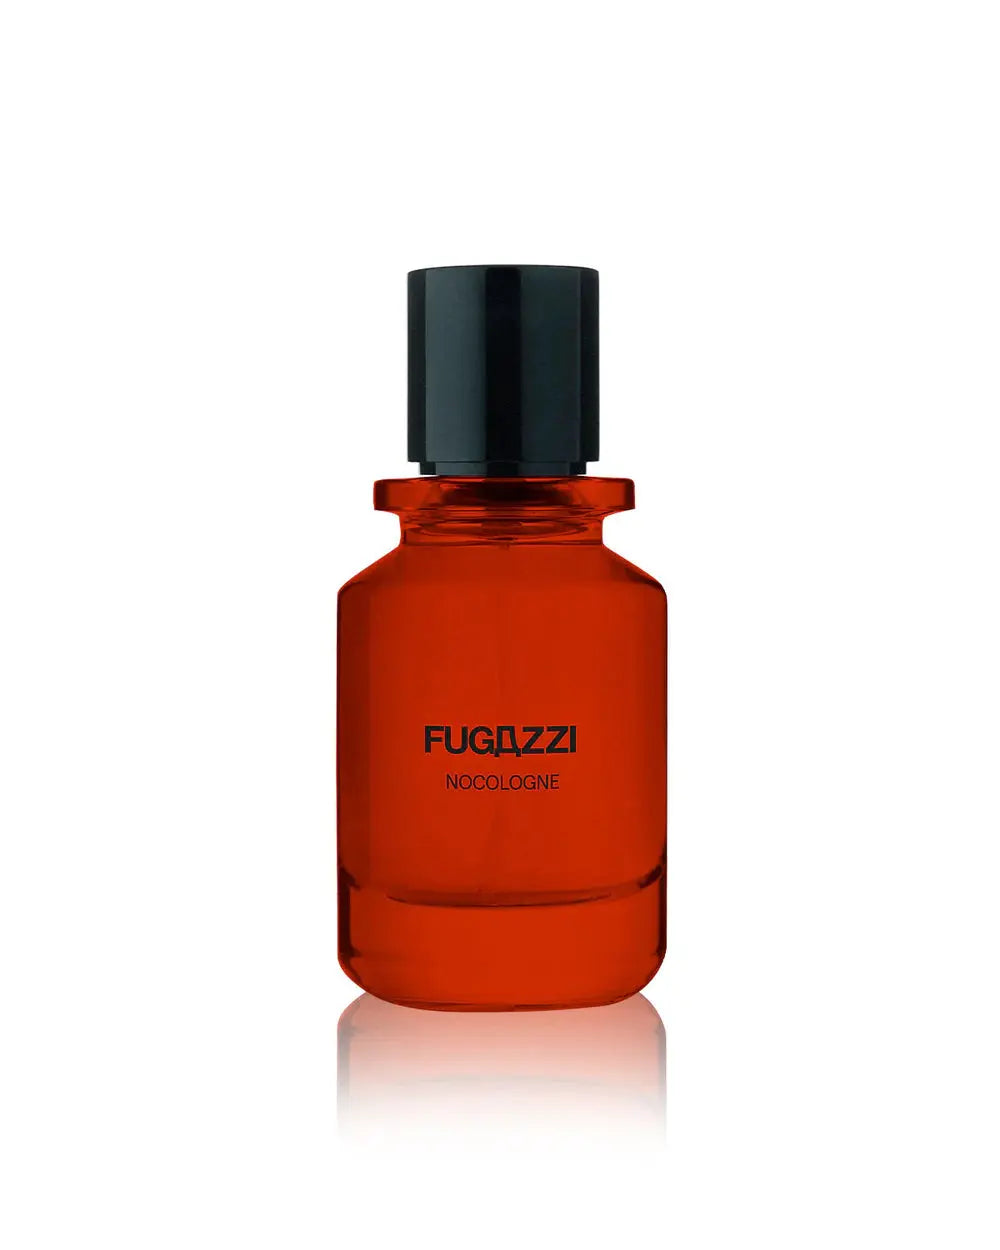 Extrait de parfum Nocologne Fugazzi - 50 ml